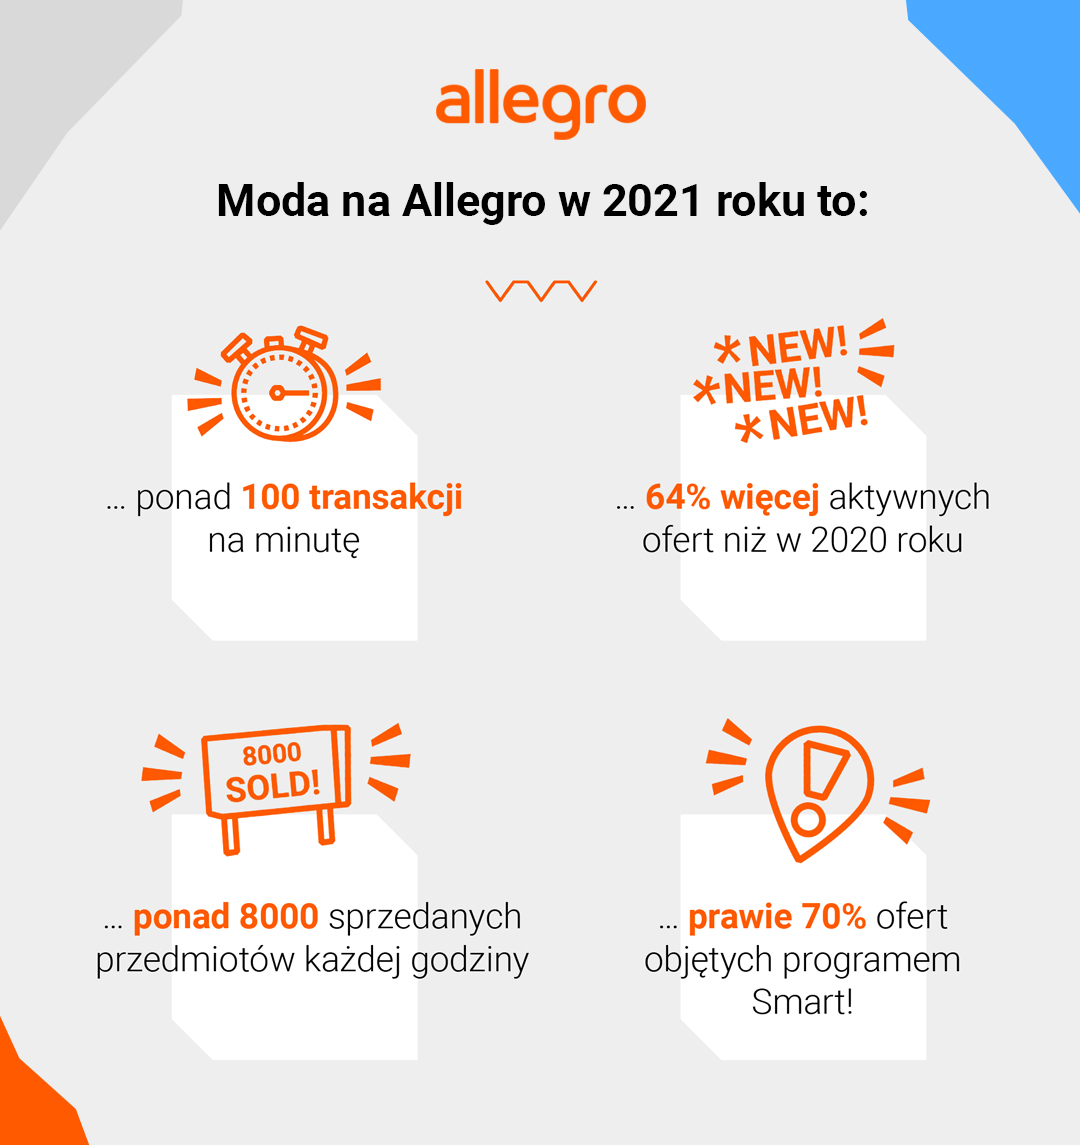 Polskie marki, grochy, neony, bucket hats i buty workery – Allegro podsumowuje modowe trendy 2021